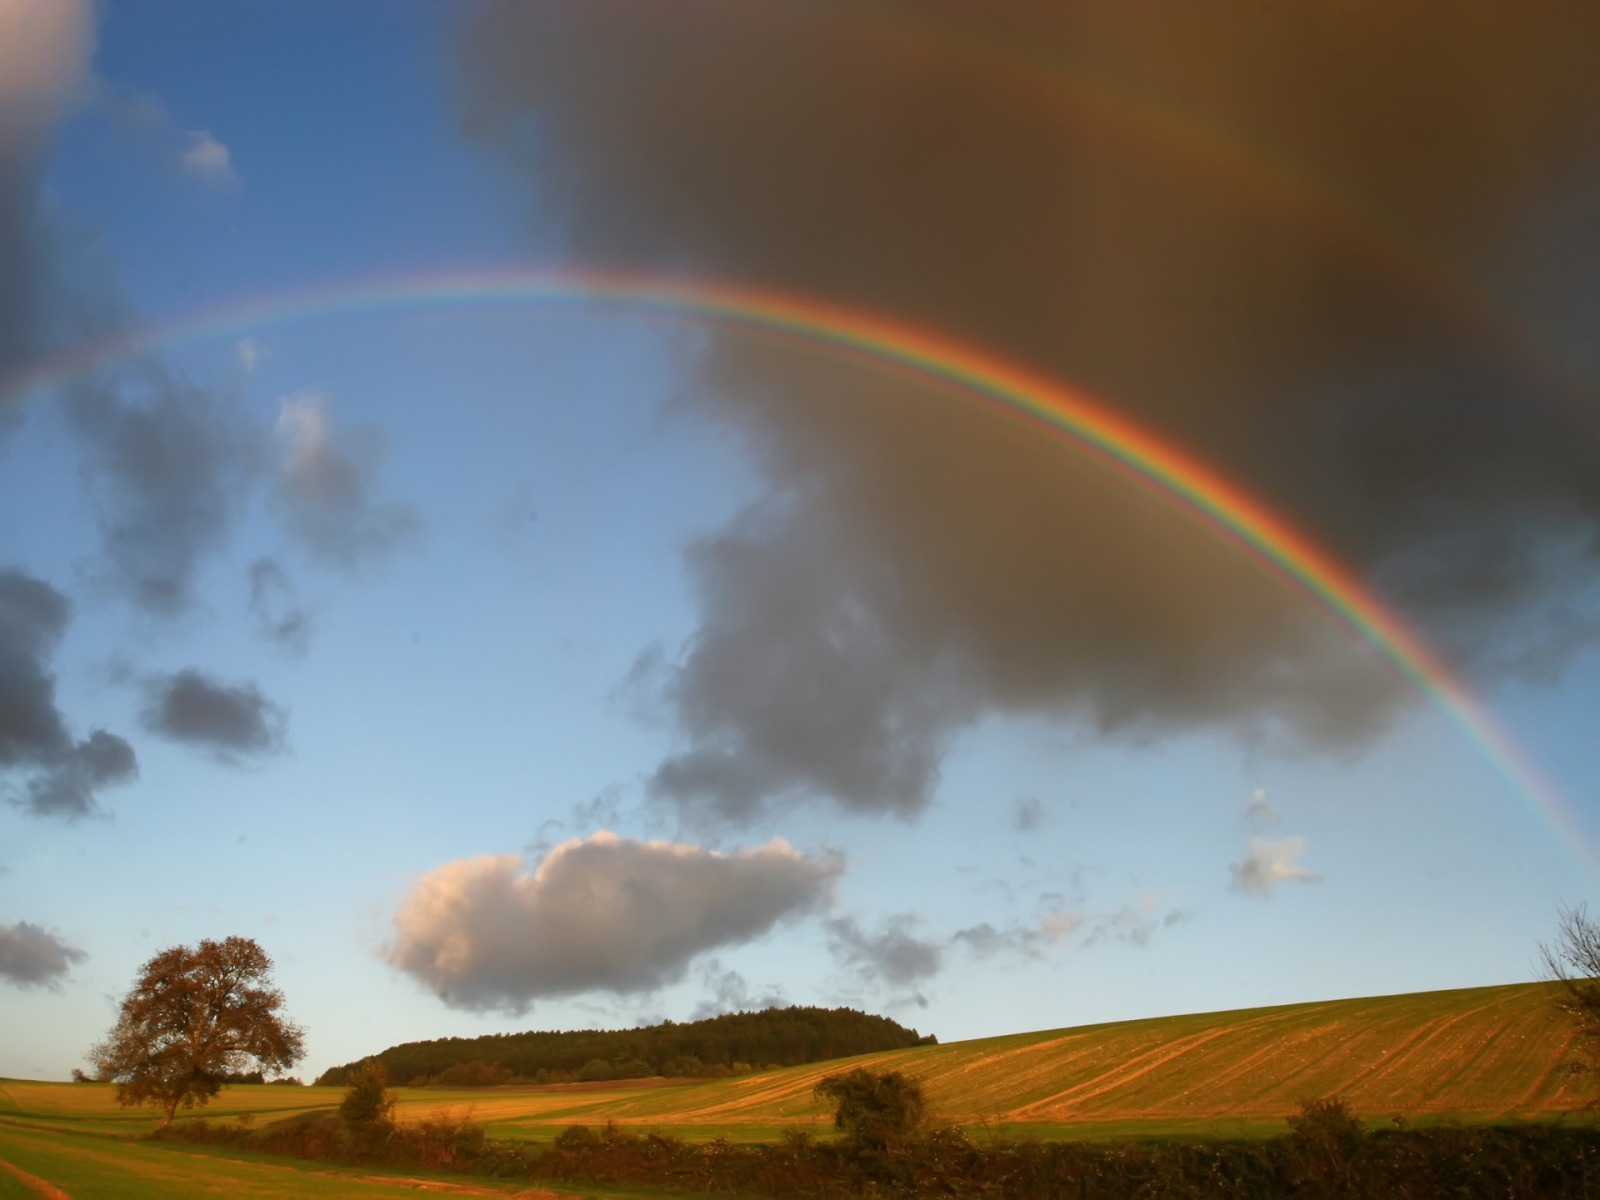 Rainbow_over_the_fields_1600_x_1200